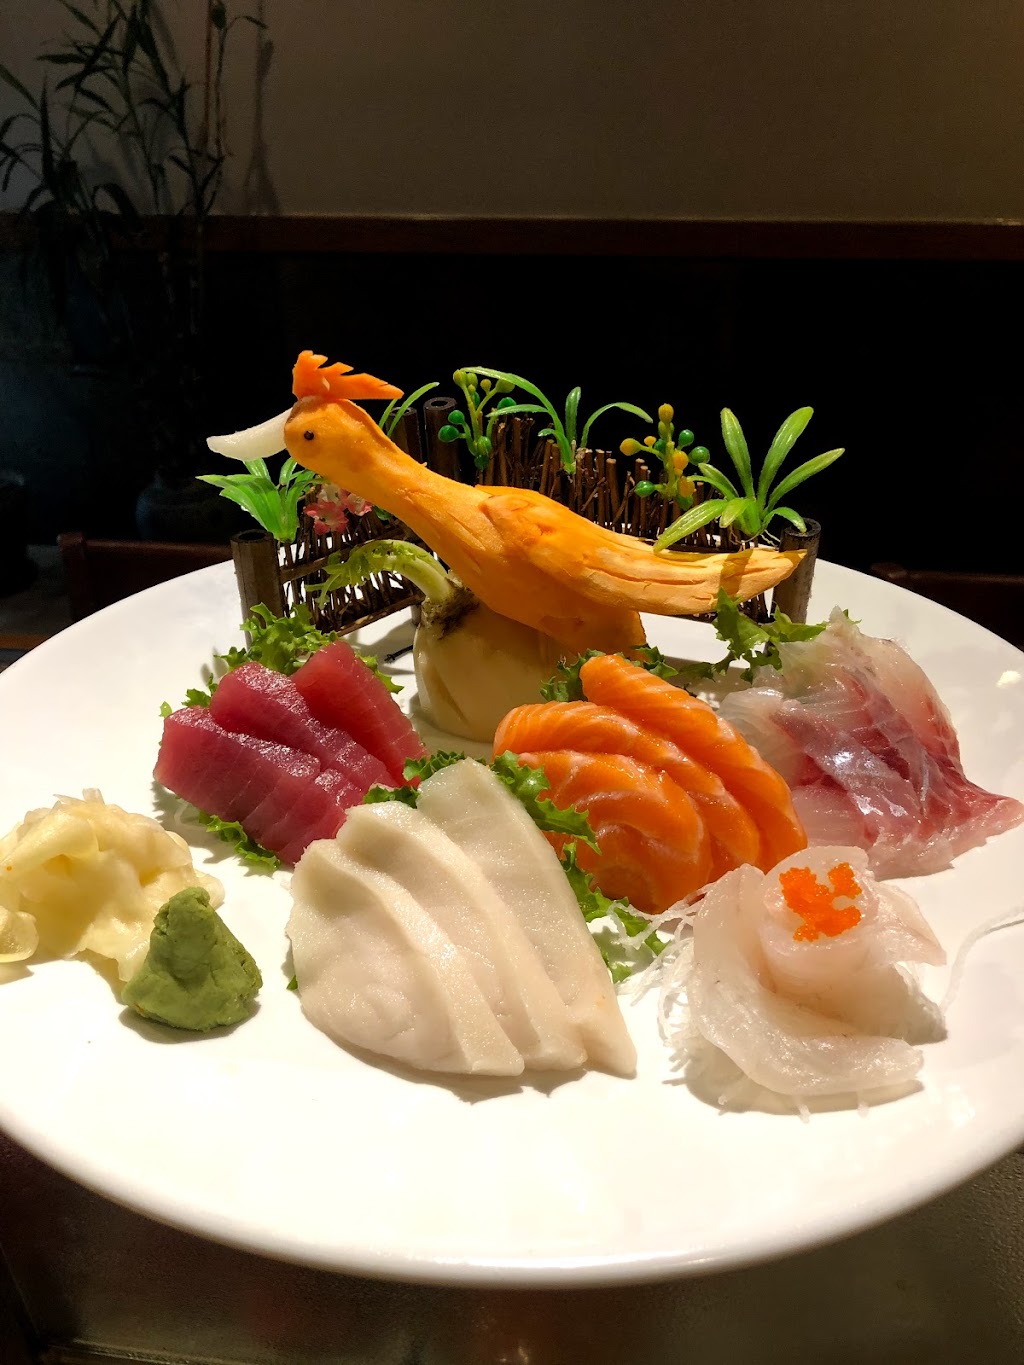 Fuji Japanese Restaurant | 3253 NJ-35, Hazlet, NJ 07730 | Phone: (732) 888-7951